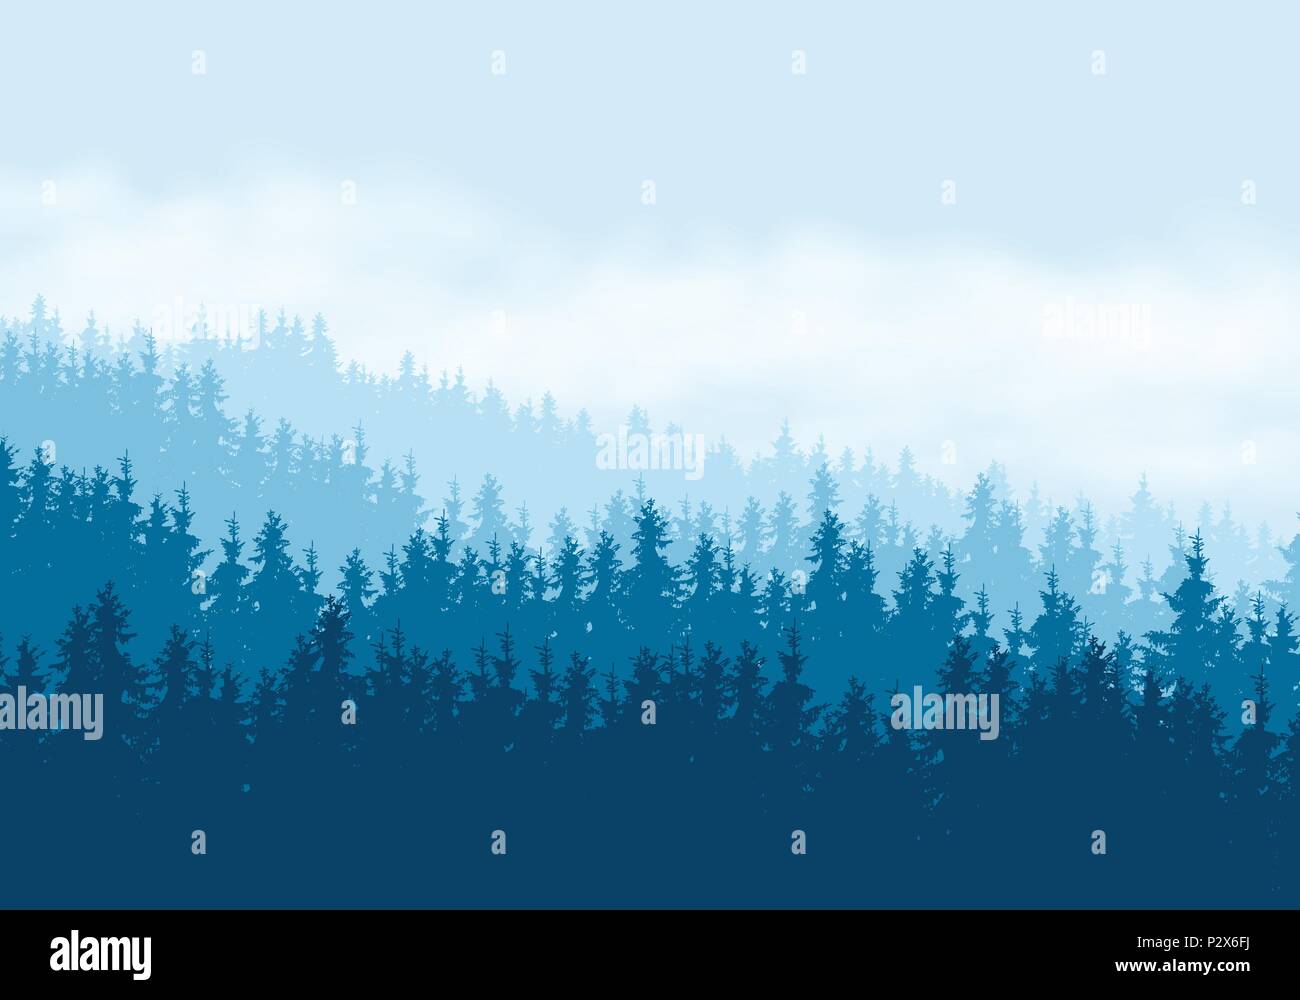 Illustrazione realistica della foresta di conifere sotto il cielo blu con nuvole - vettore Illustrazione Vettoriale